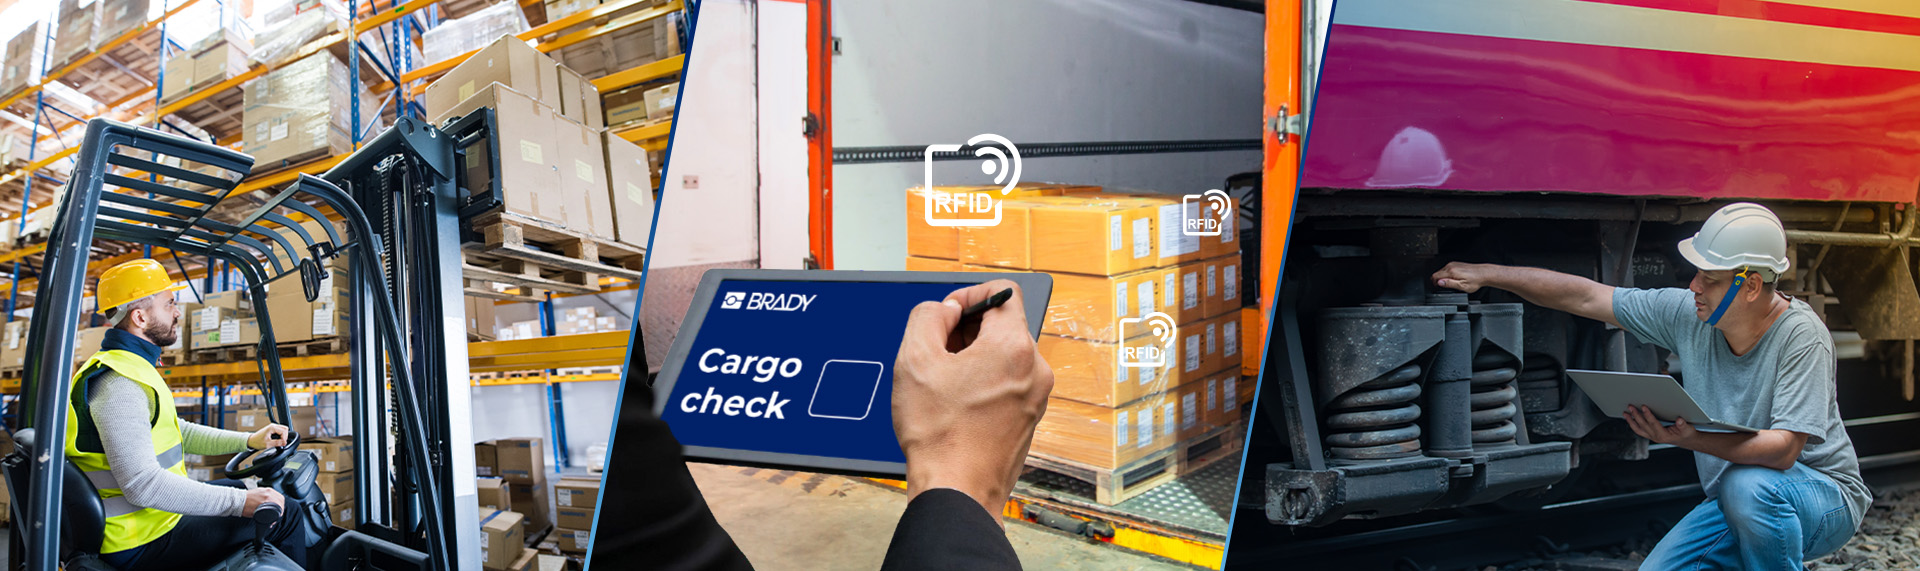 Een collage van drie beelden van RFID in verschillende toepassingen: In een magazijn, in een vrachtwagen en onder een zware machine.